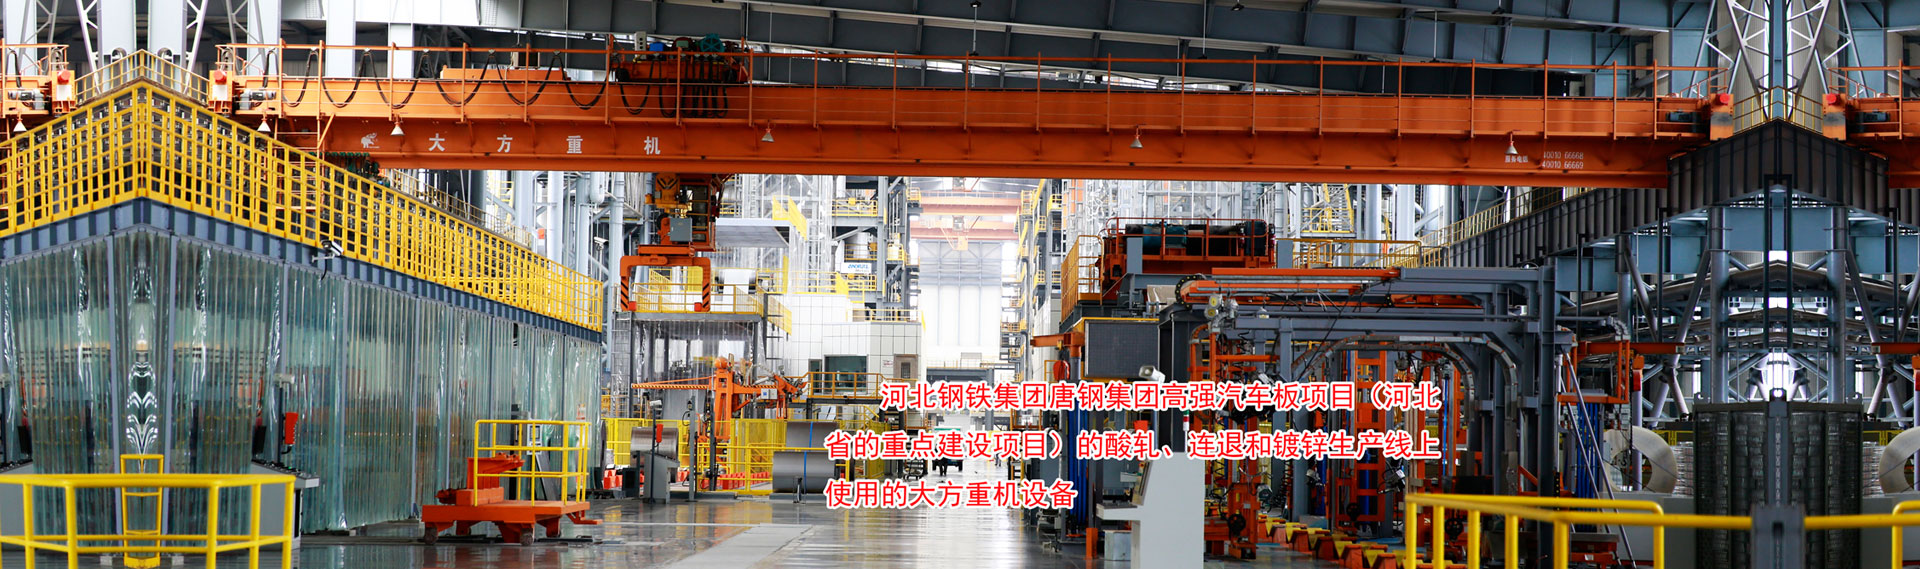 河南省大方重型機器有限公司|單、雙梁起重機|門式起重機、龍門吊、防爆冶金起重機、電動葫蘆